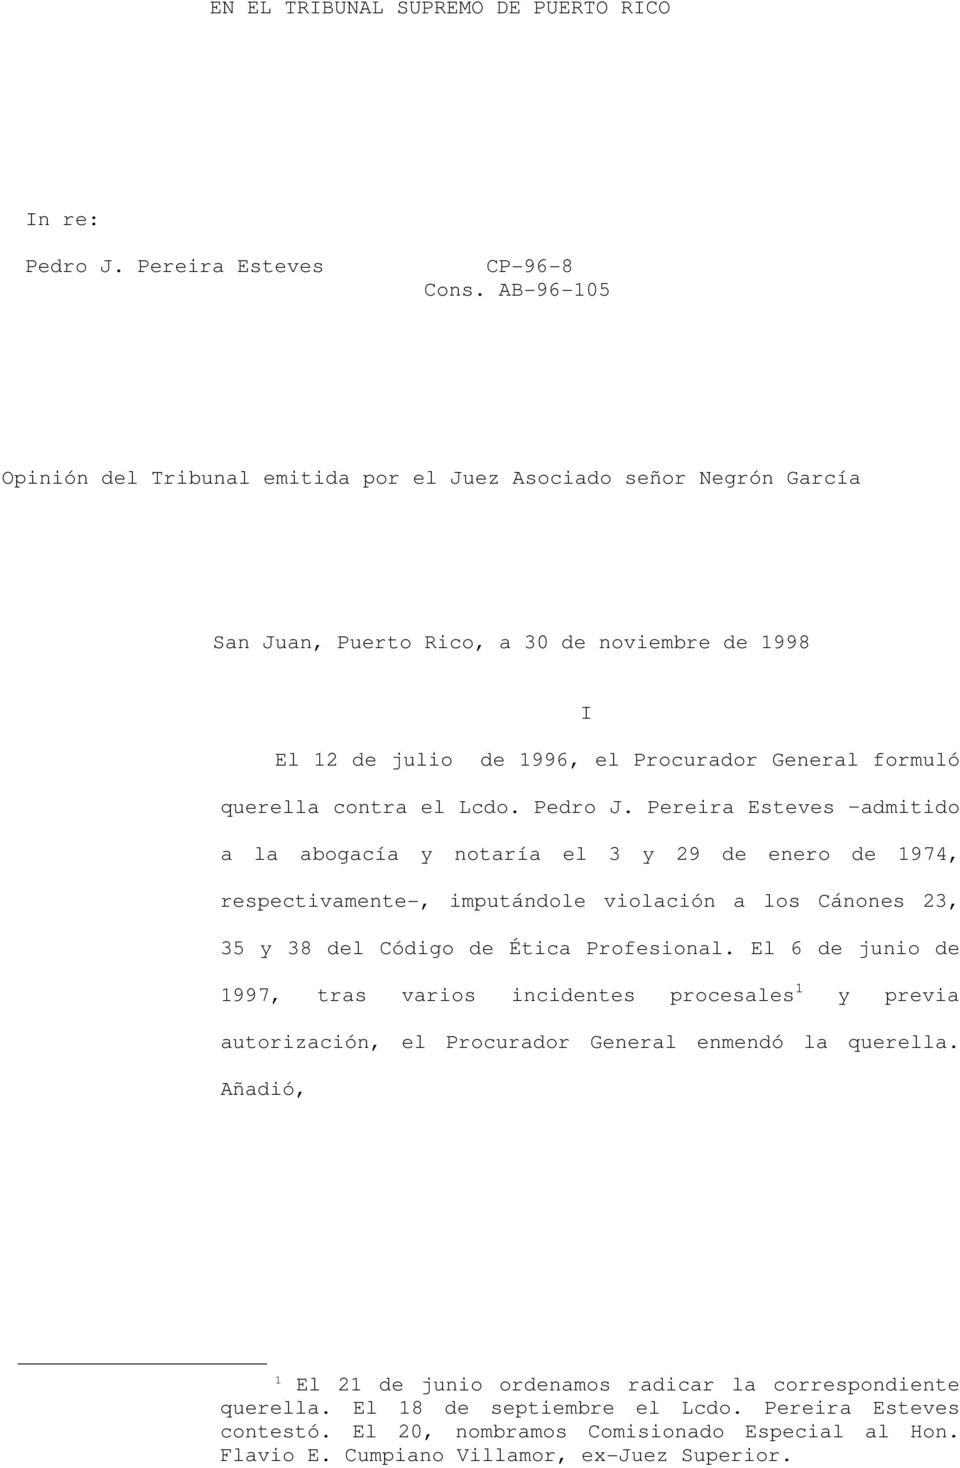 contra el Lcdo. Pedro J. Pereira Esteves admitido a la abogacía y notaría el 3 y 29 de enero de 1974, respectivamente-, imputándole violación a los Cánones 23, 35 y 38 del Código de Ética Profesional.